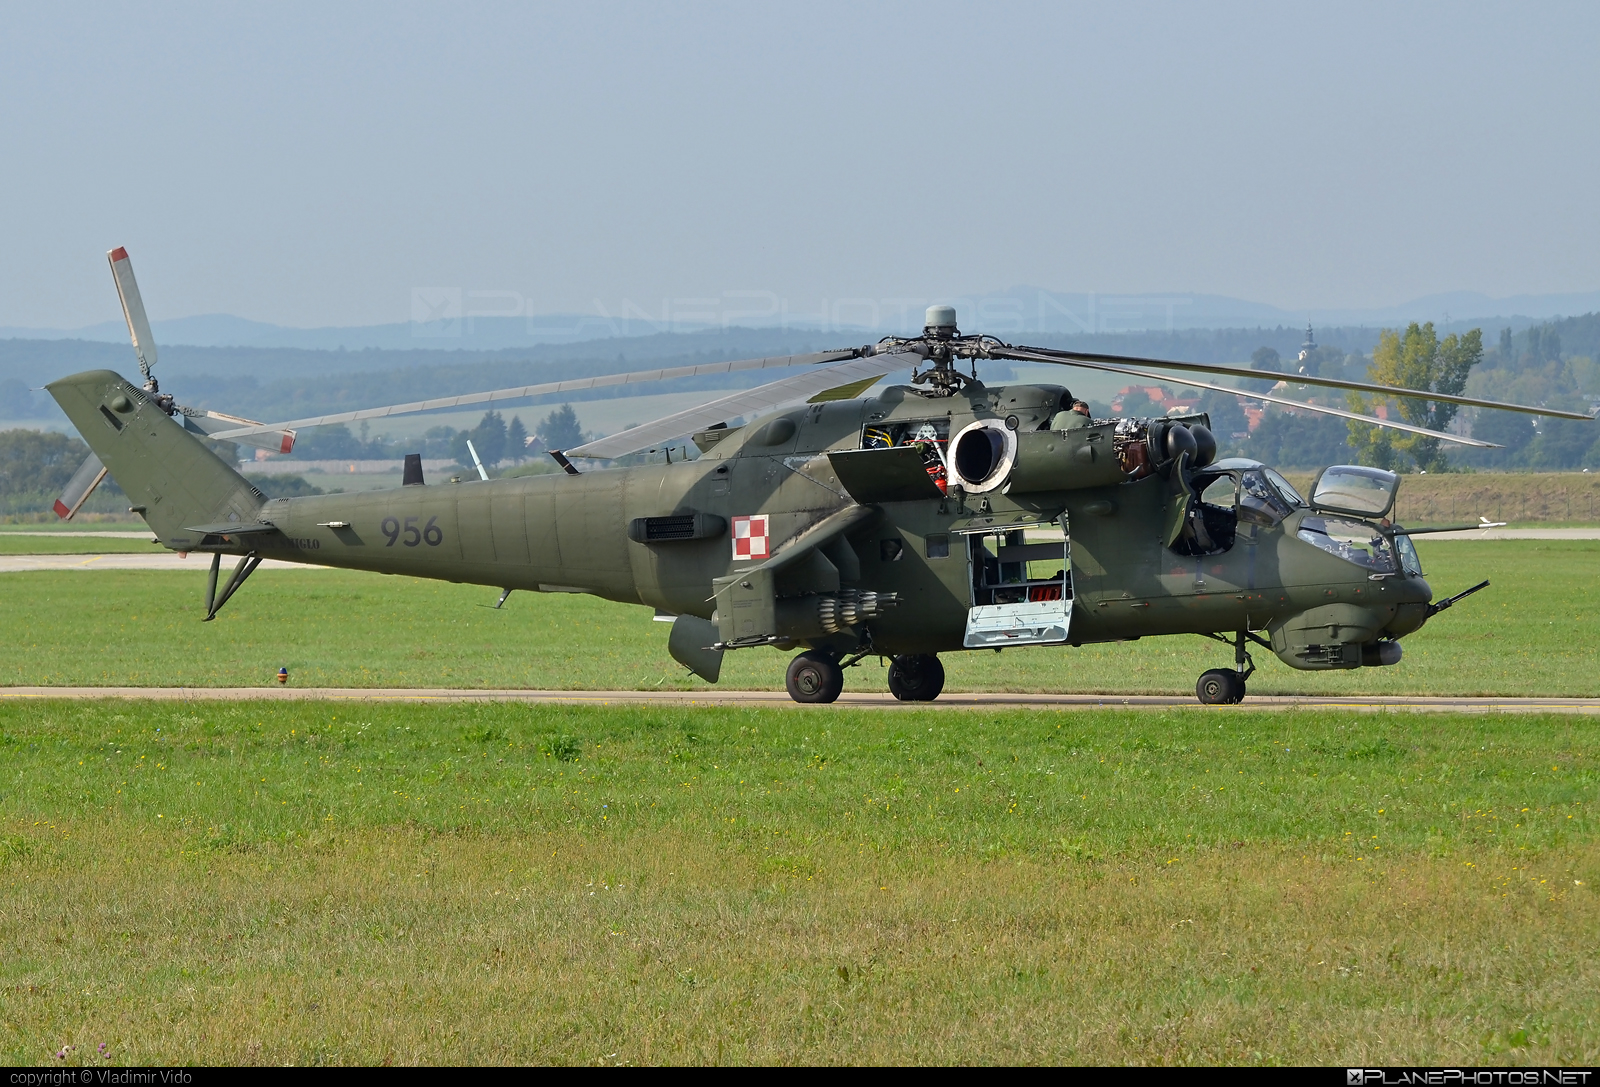 Mil Mi-24V - 956 operated by Siły Powietrzne Rzeczypospolitej Polskiej (Polish Air Force) #mi24 #mi24v #mil #mil24 #mil24v #milhelicopters #polishairforce #silypowietrzne